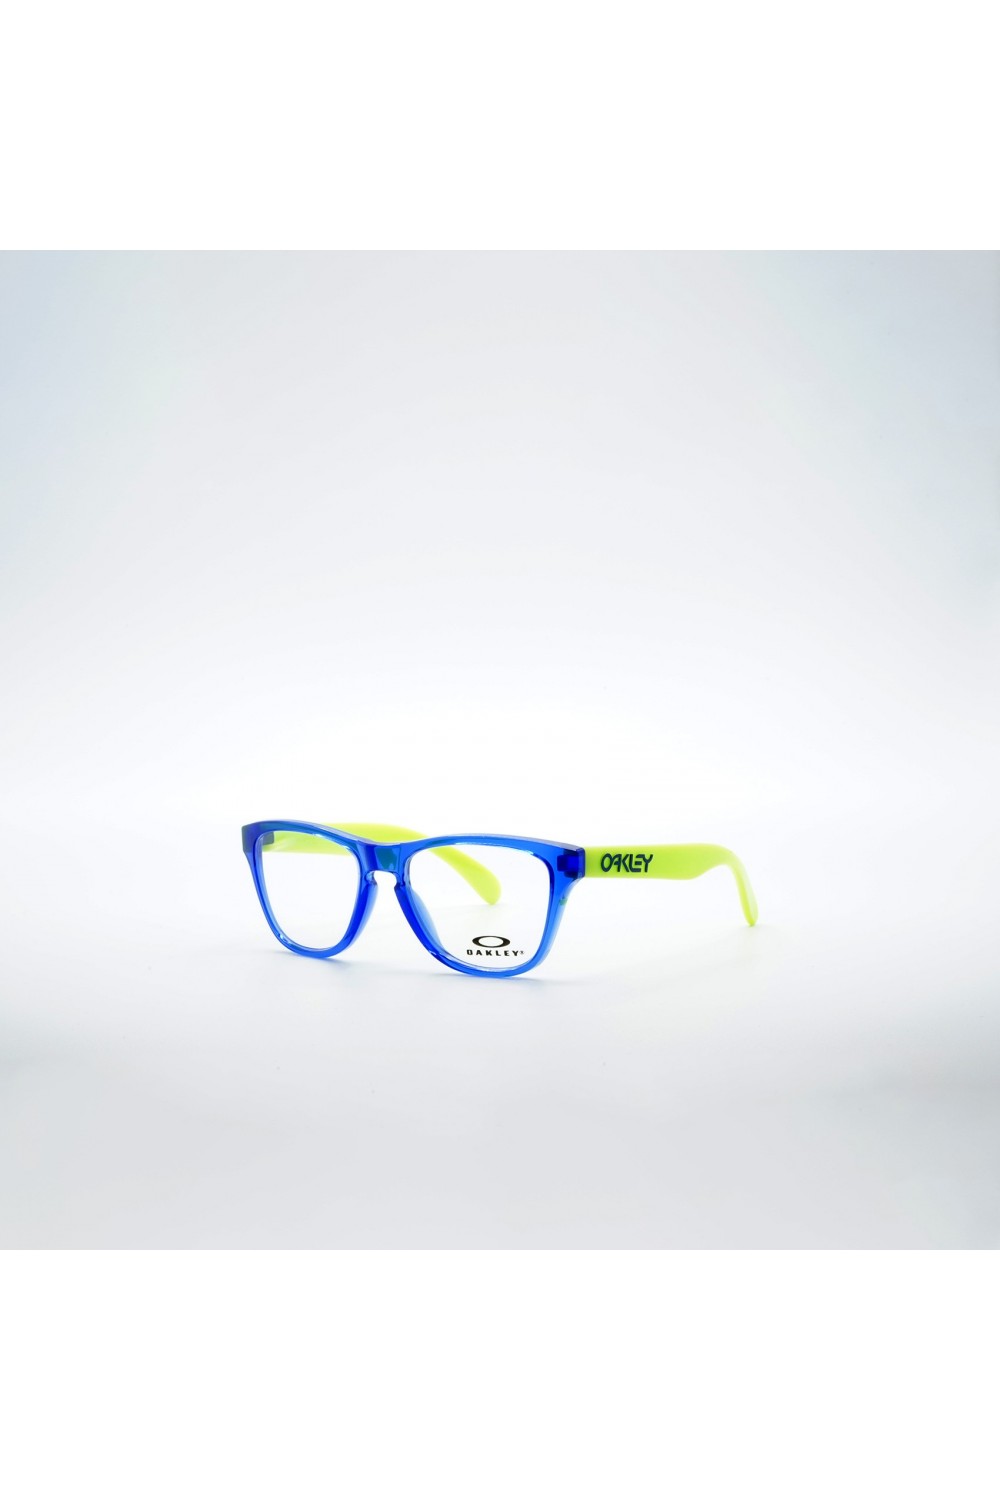 Oakley - Occhiali da vista in resina squadrati per bambino blu/fluo - OY8009